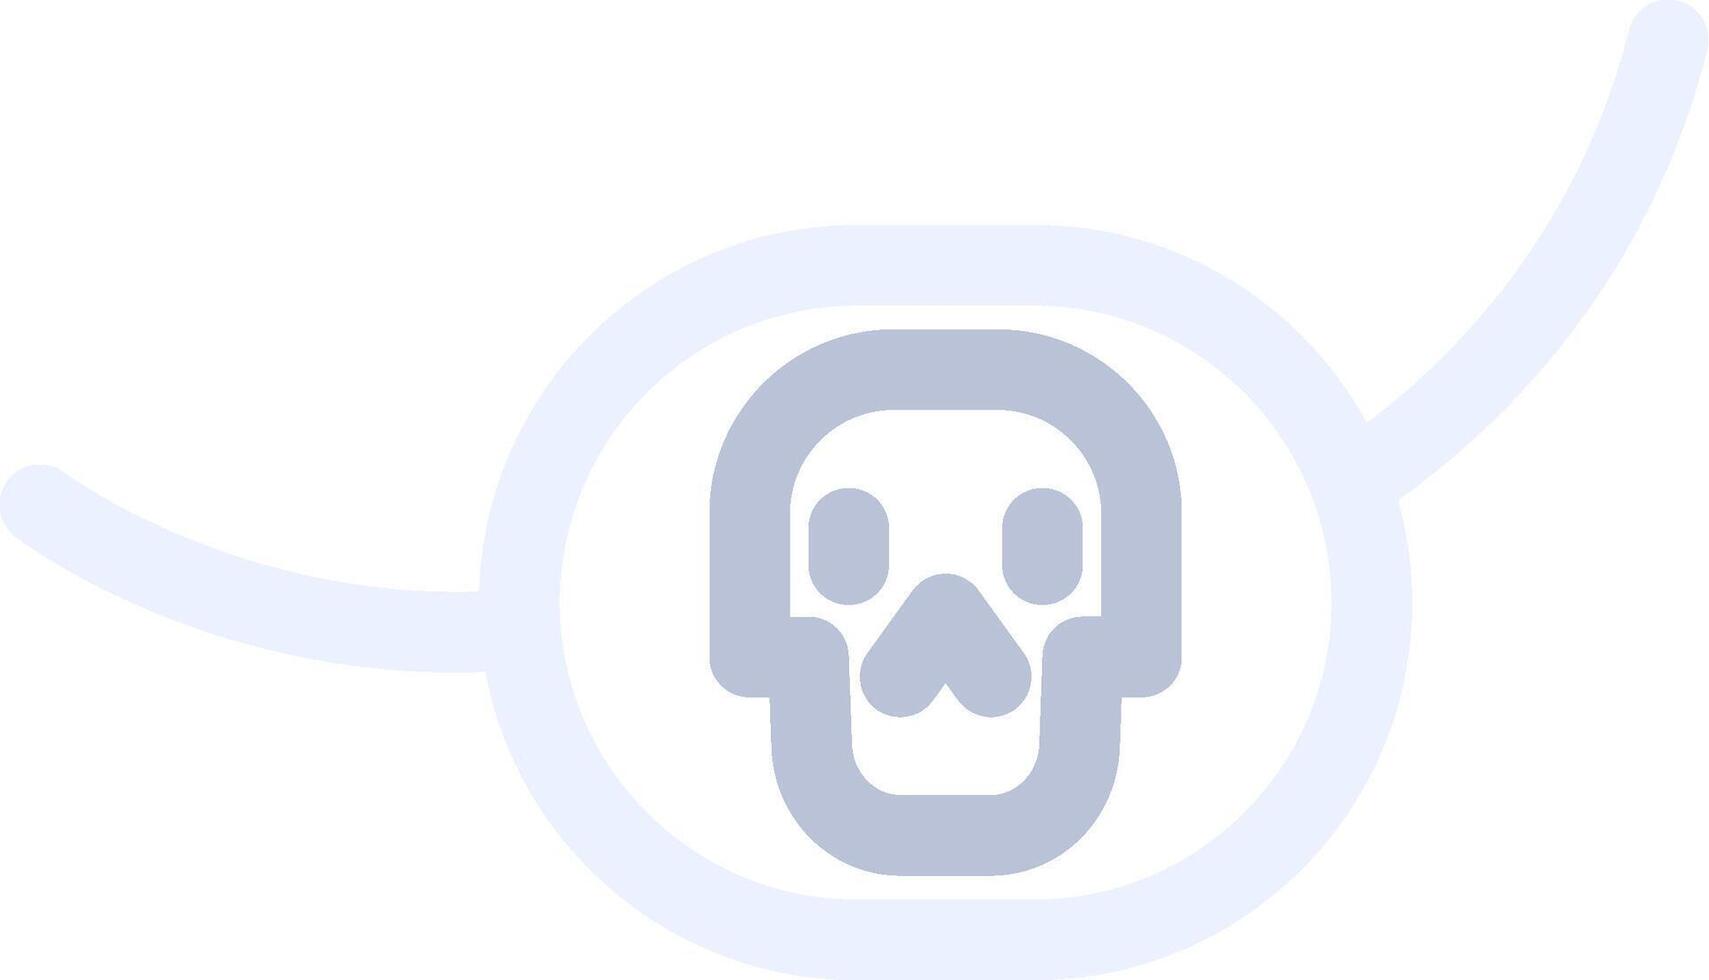 design de ícone criativo de patch de piratas vetor